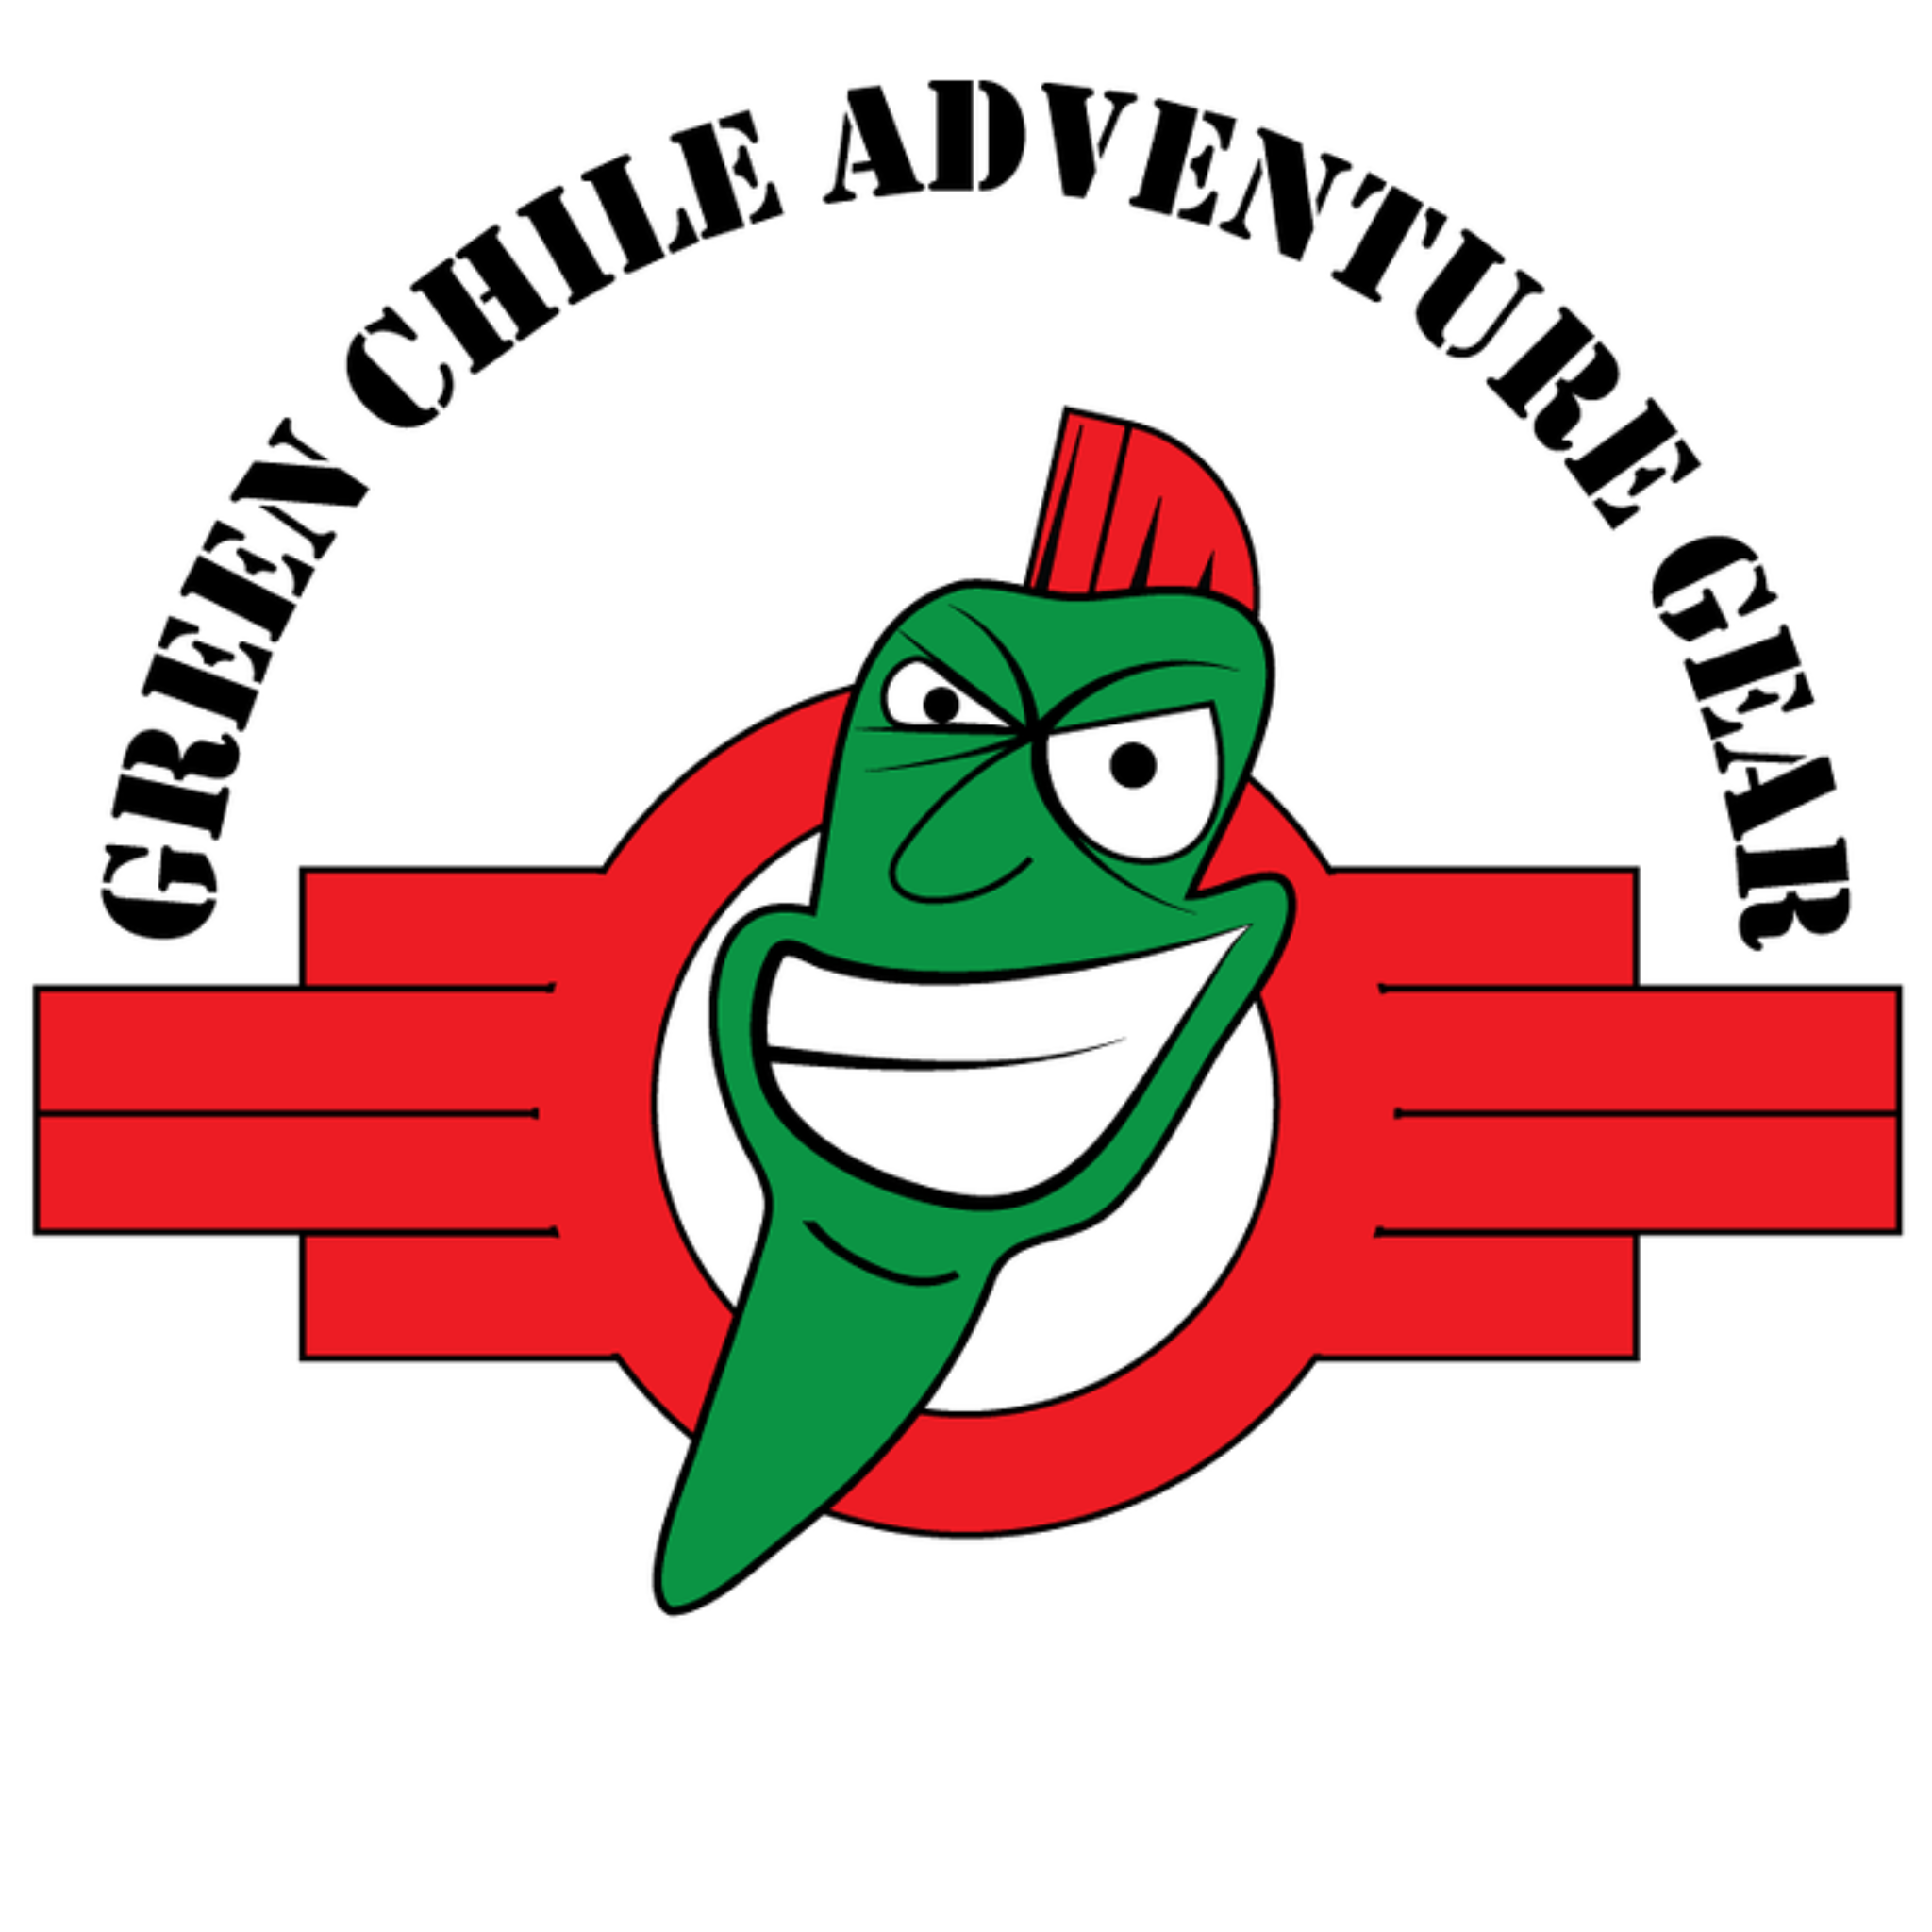 Green Chile Adventure Gear Vinyl Sticker